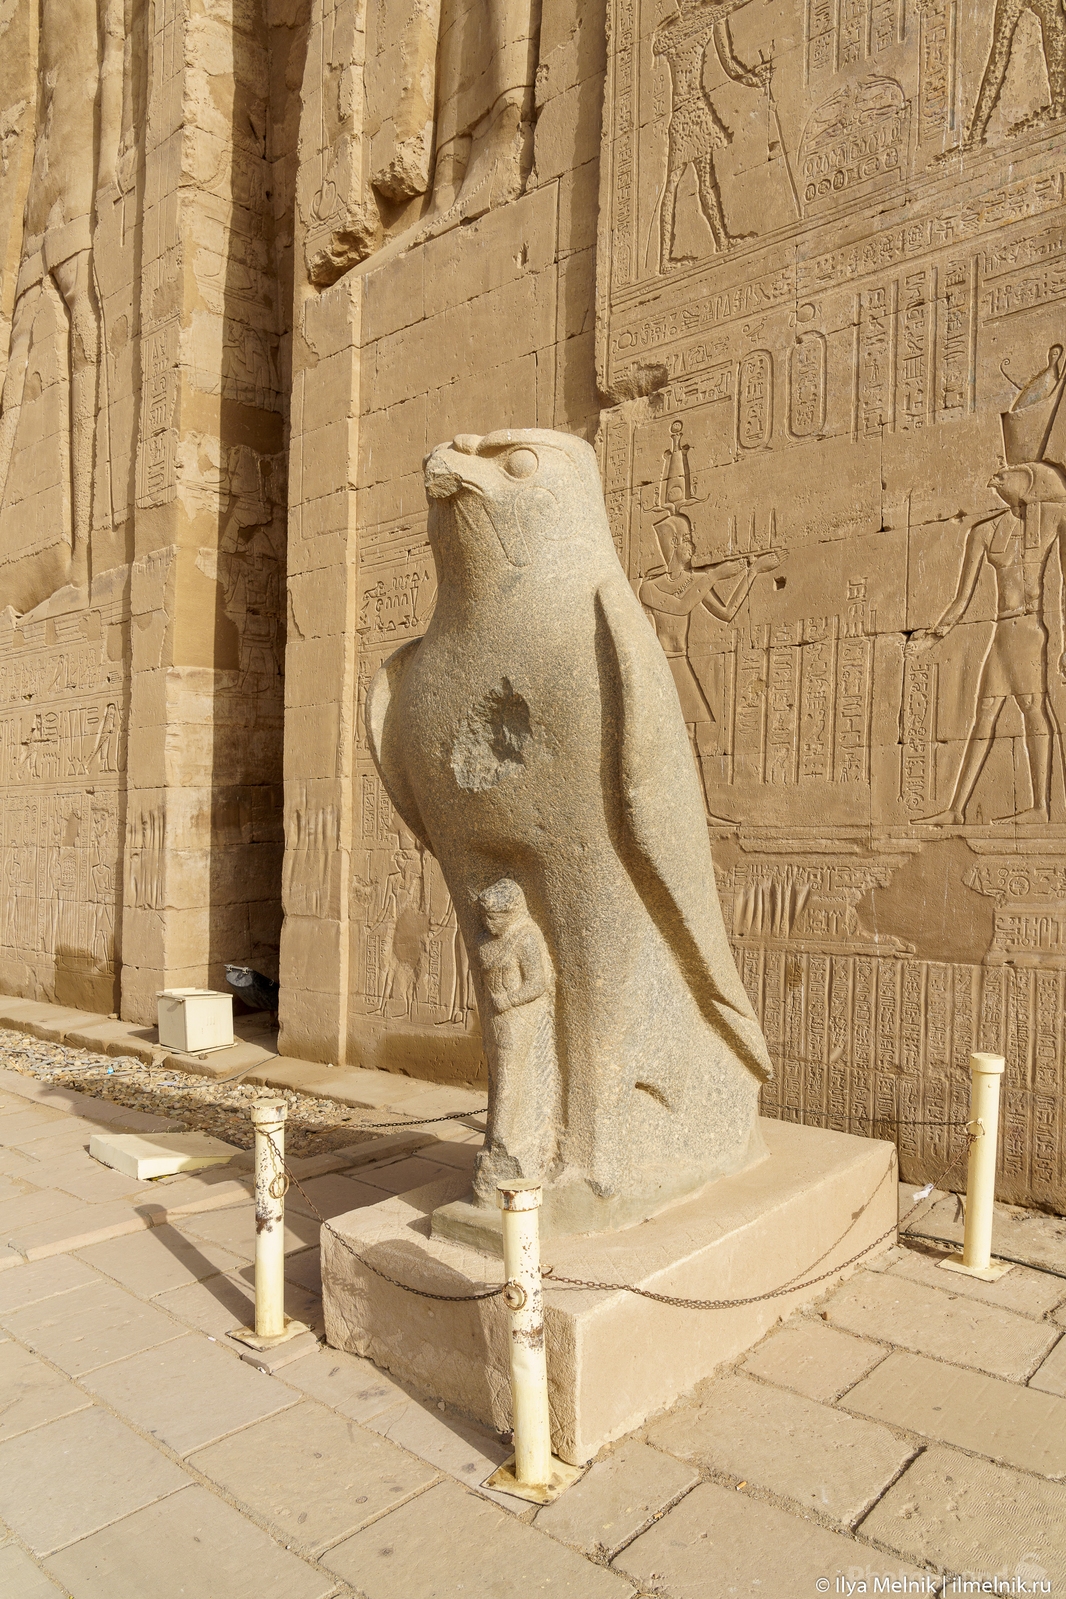 Image of Temple of Horus - Edfu by Ilya Melnik